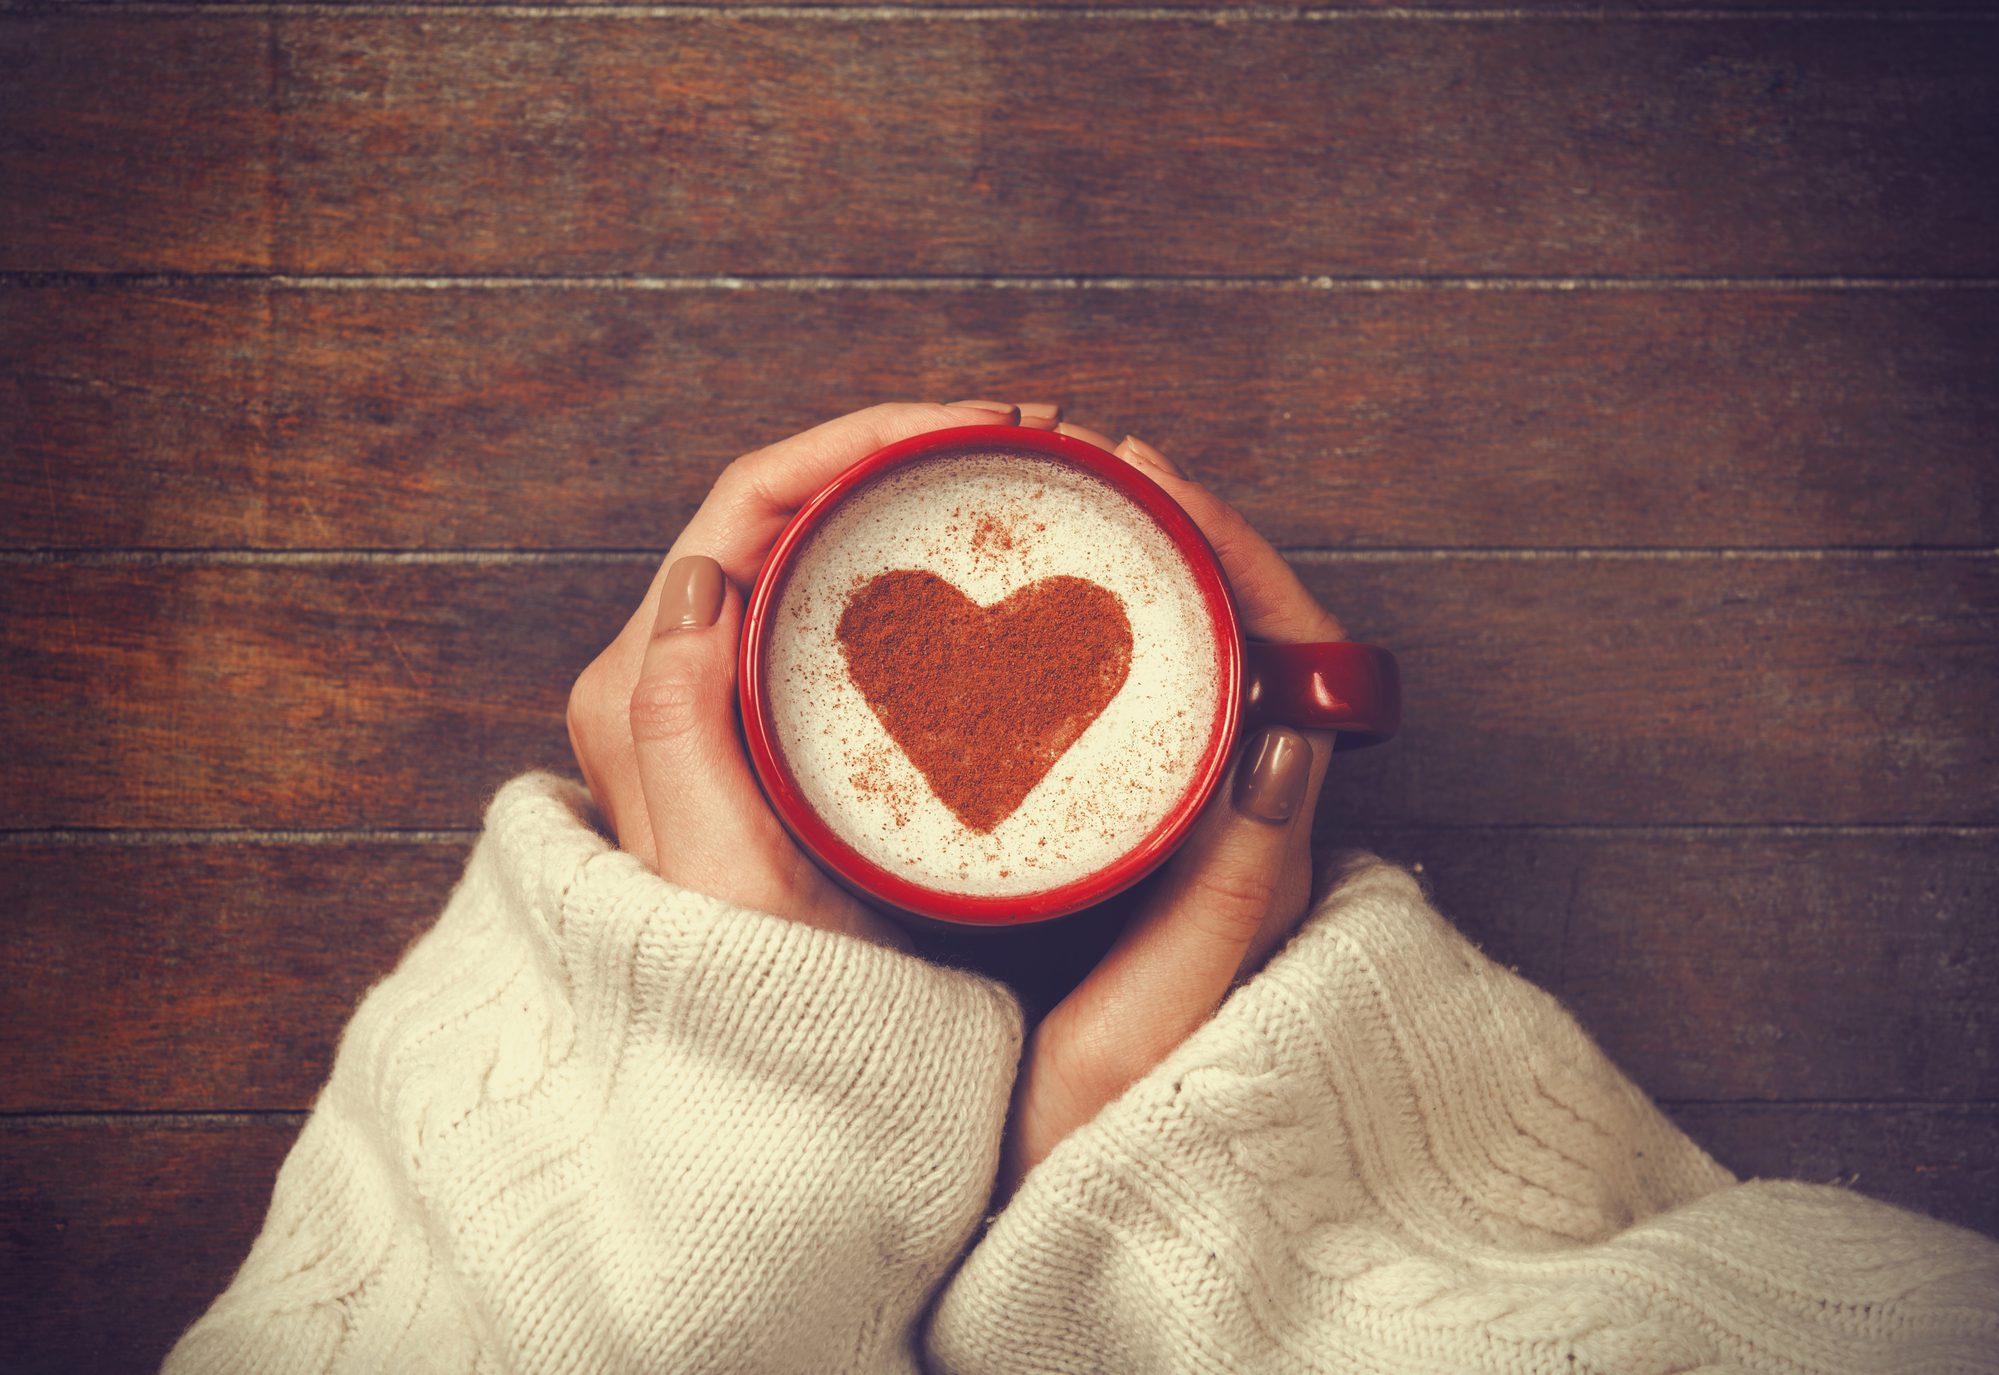 love, one word, coffee